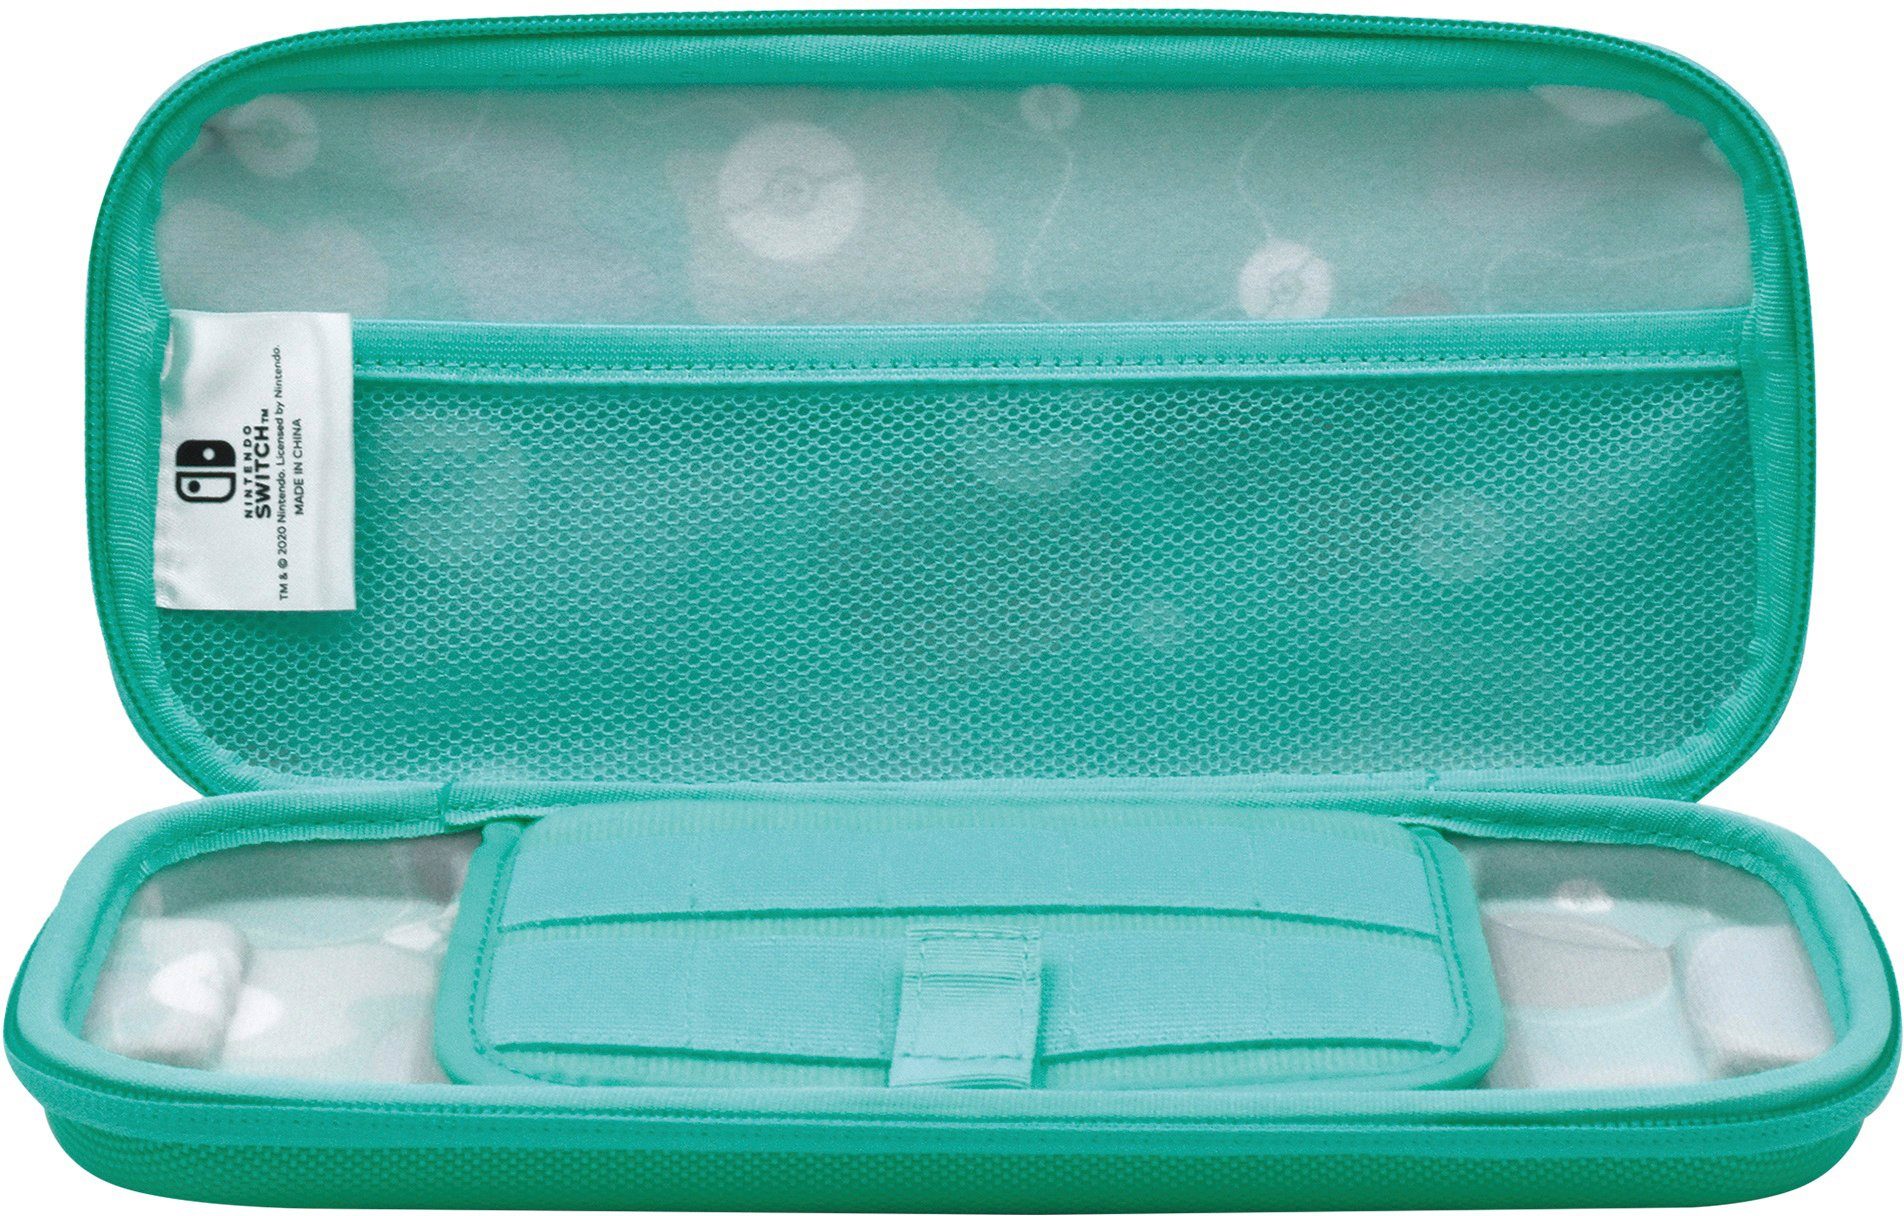 Tasche Edition Switch Pikachu Case & Friends Hori - Nintendo Spielekonsolen-Tasche Vault